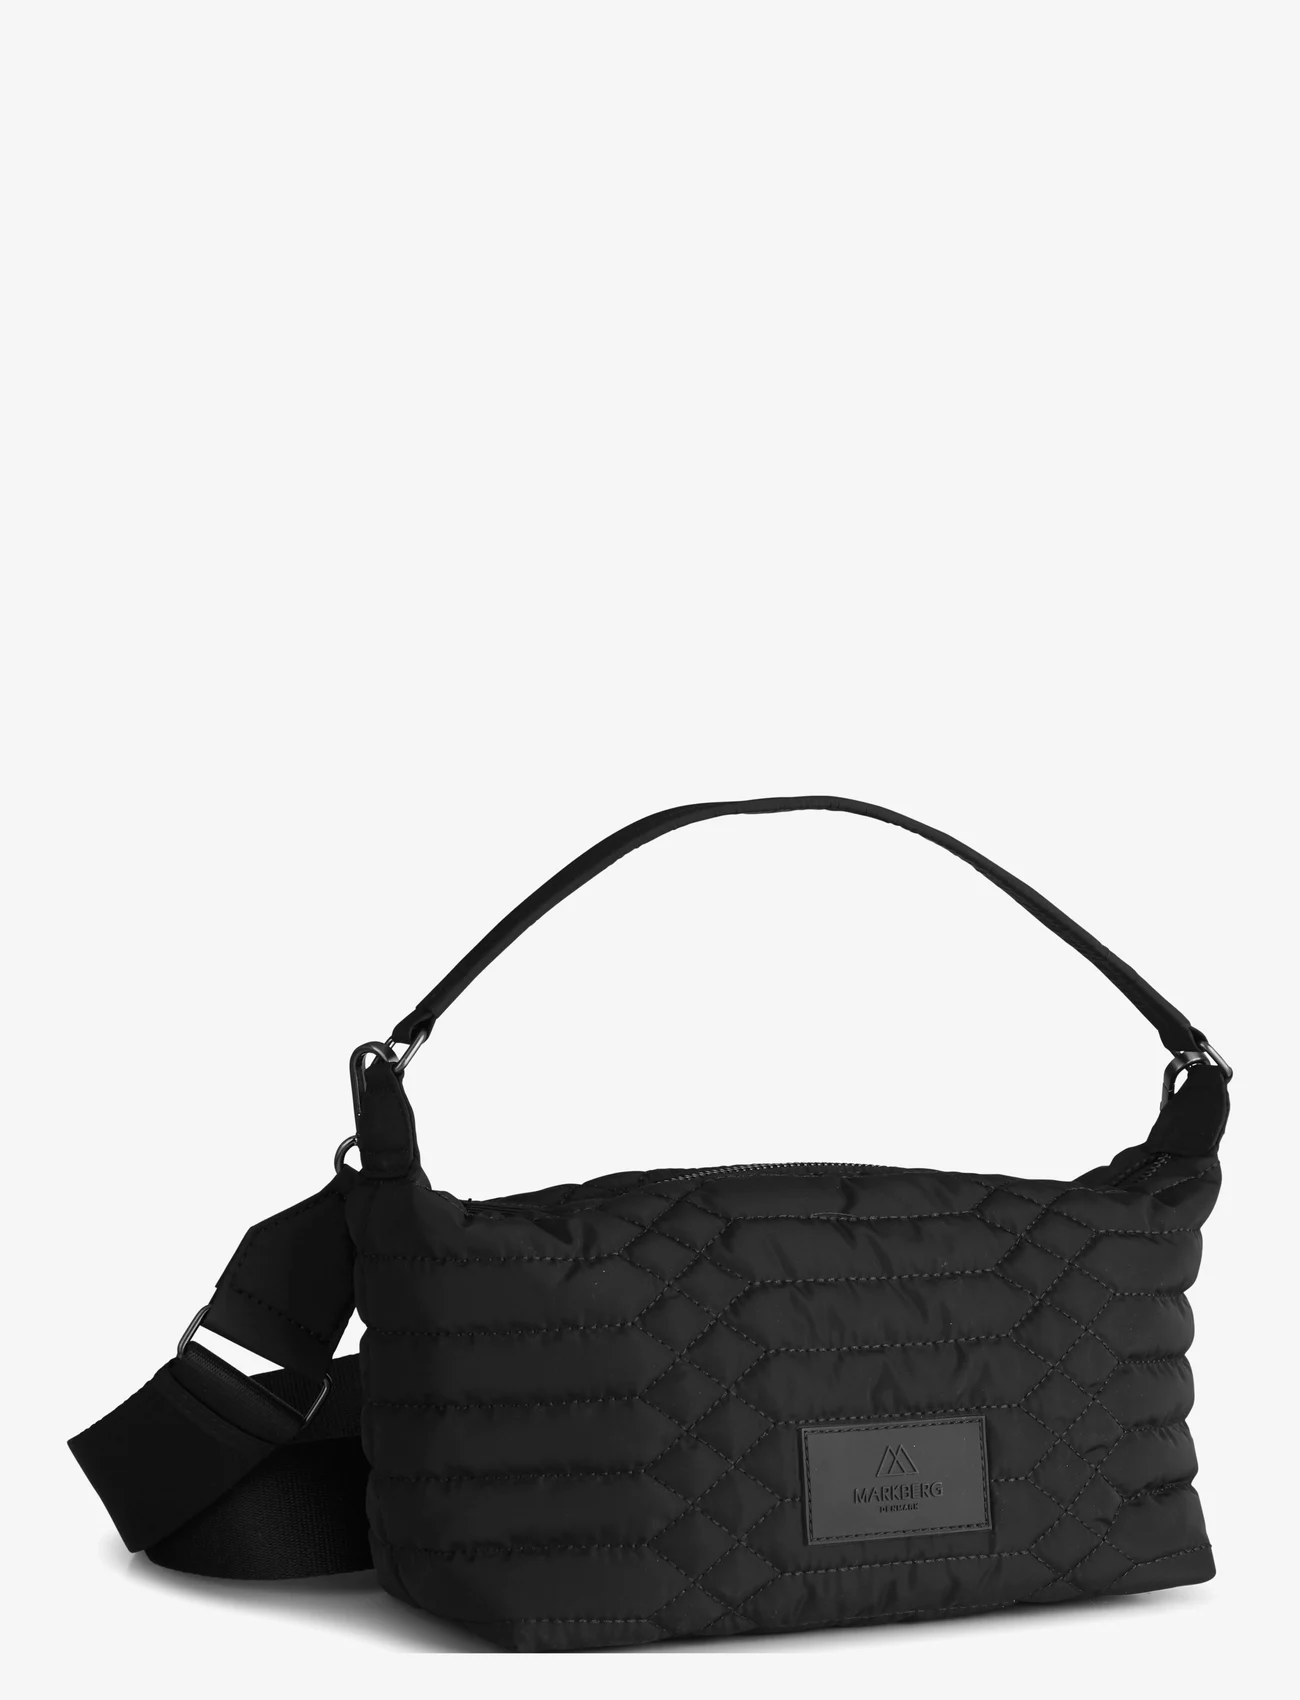 Markberg - LotusMBG Bag, Snake Quilt - festklær til outlet-priser - black w/black - 1